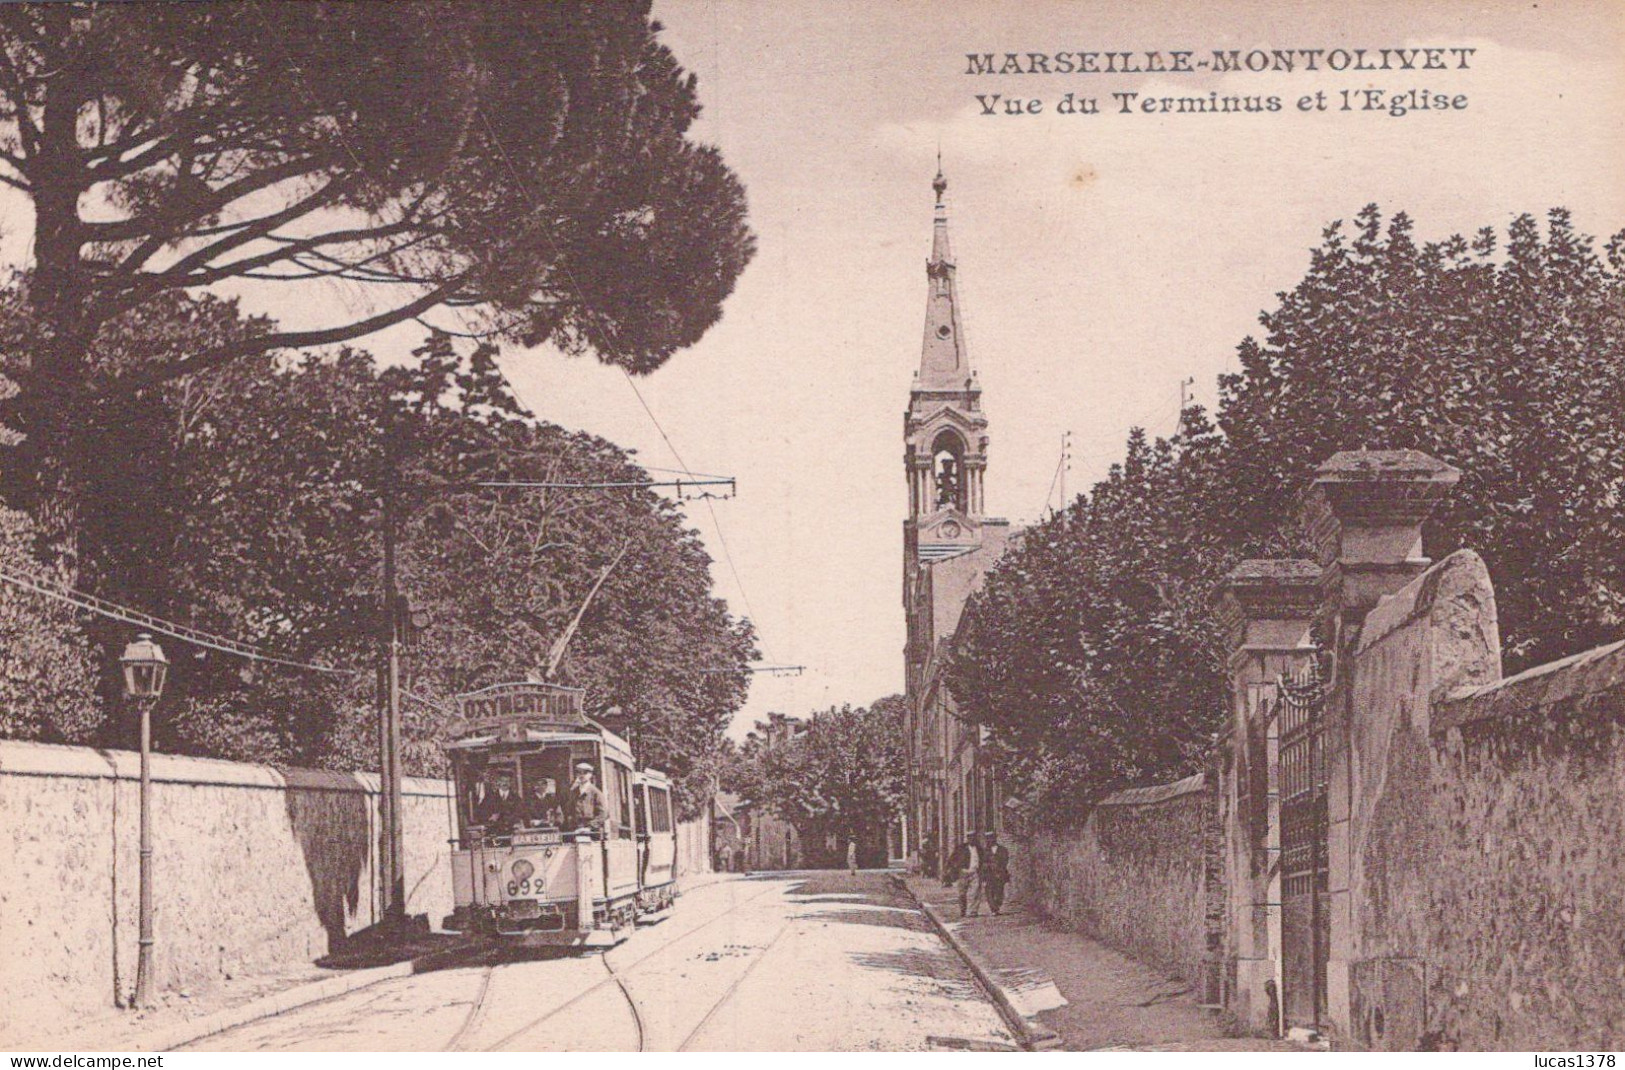 13 / MARSEILLE / MONTOLIVET / VUE DU TERMINUS ET L EGLISE / TRAMWAY - Saint Barnabé, Saint Julien, Montolivet